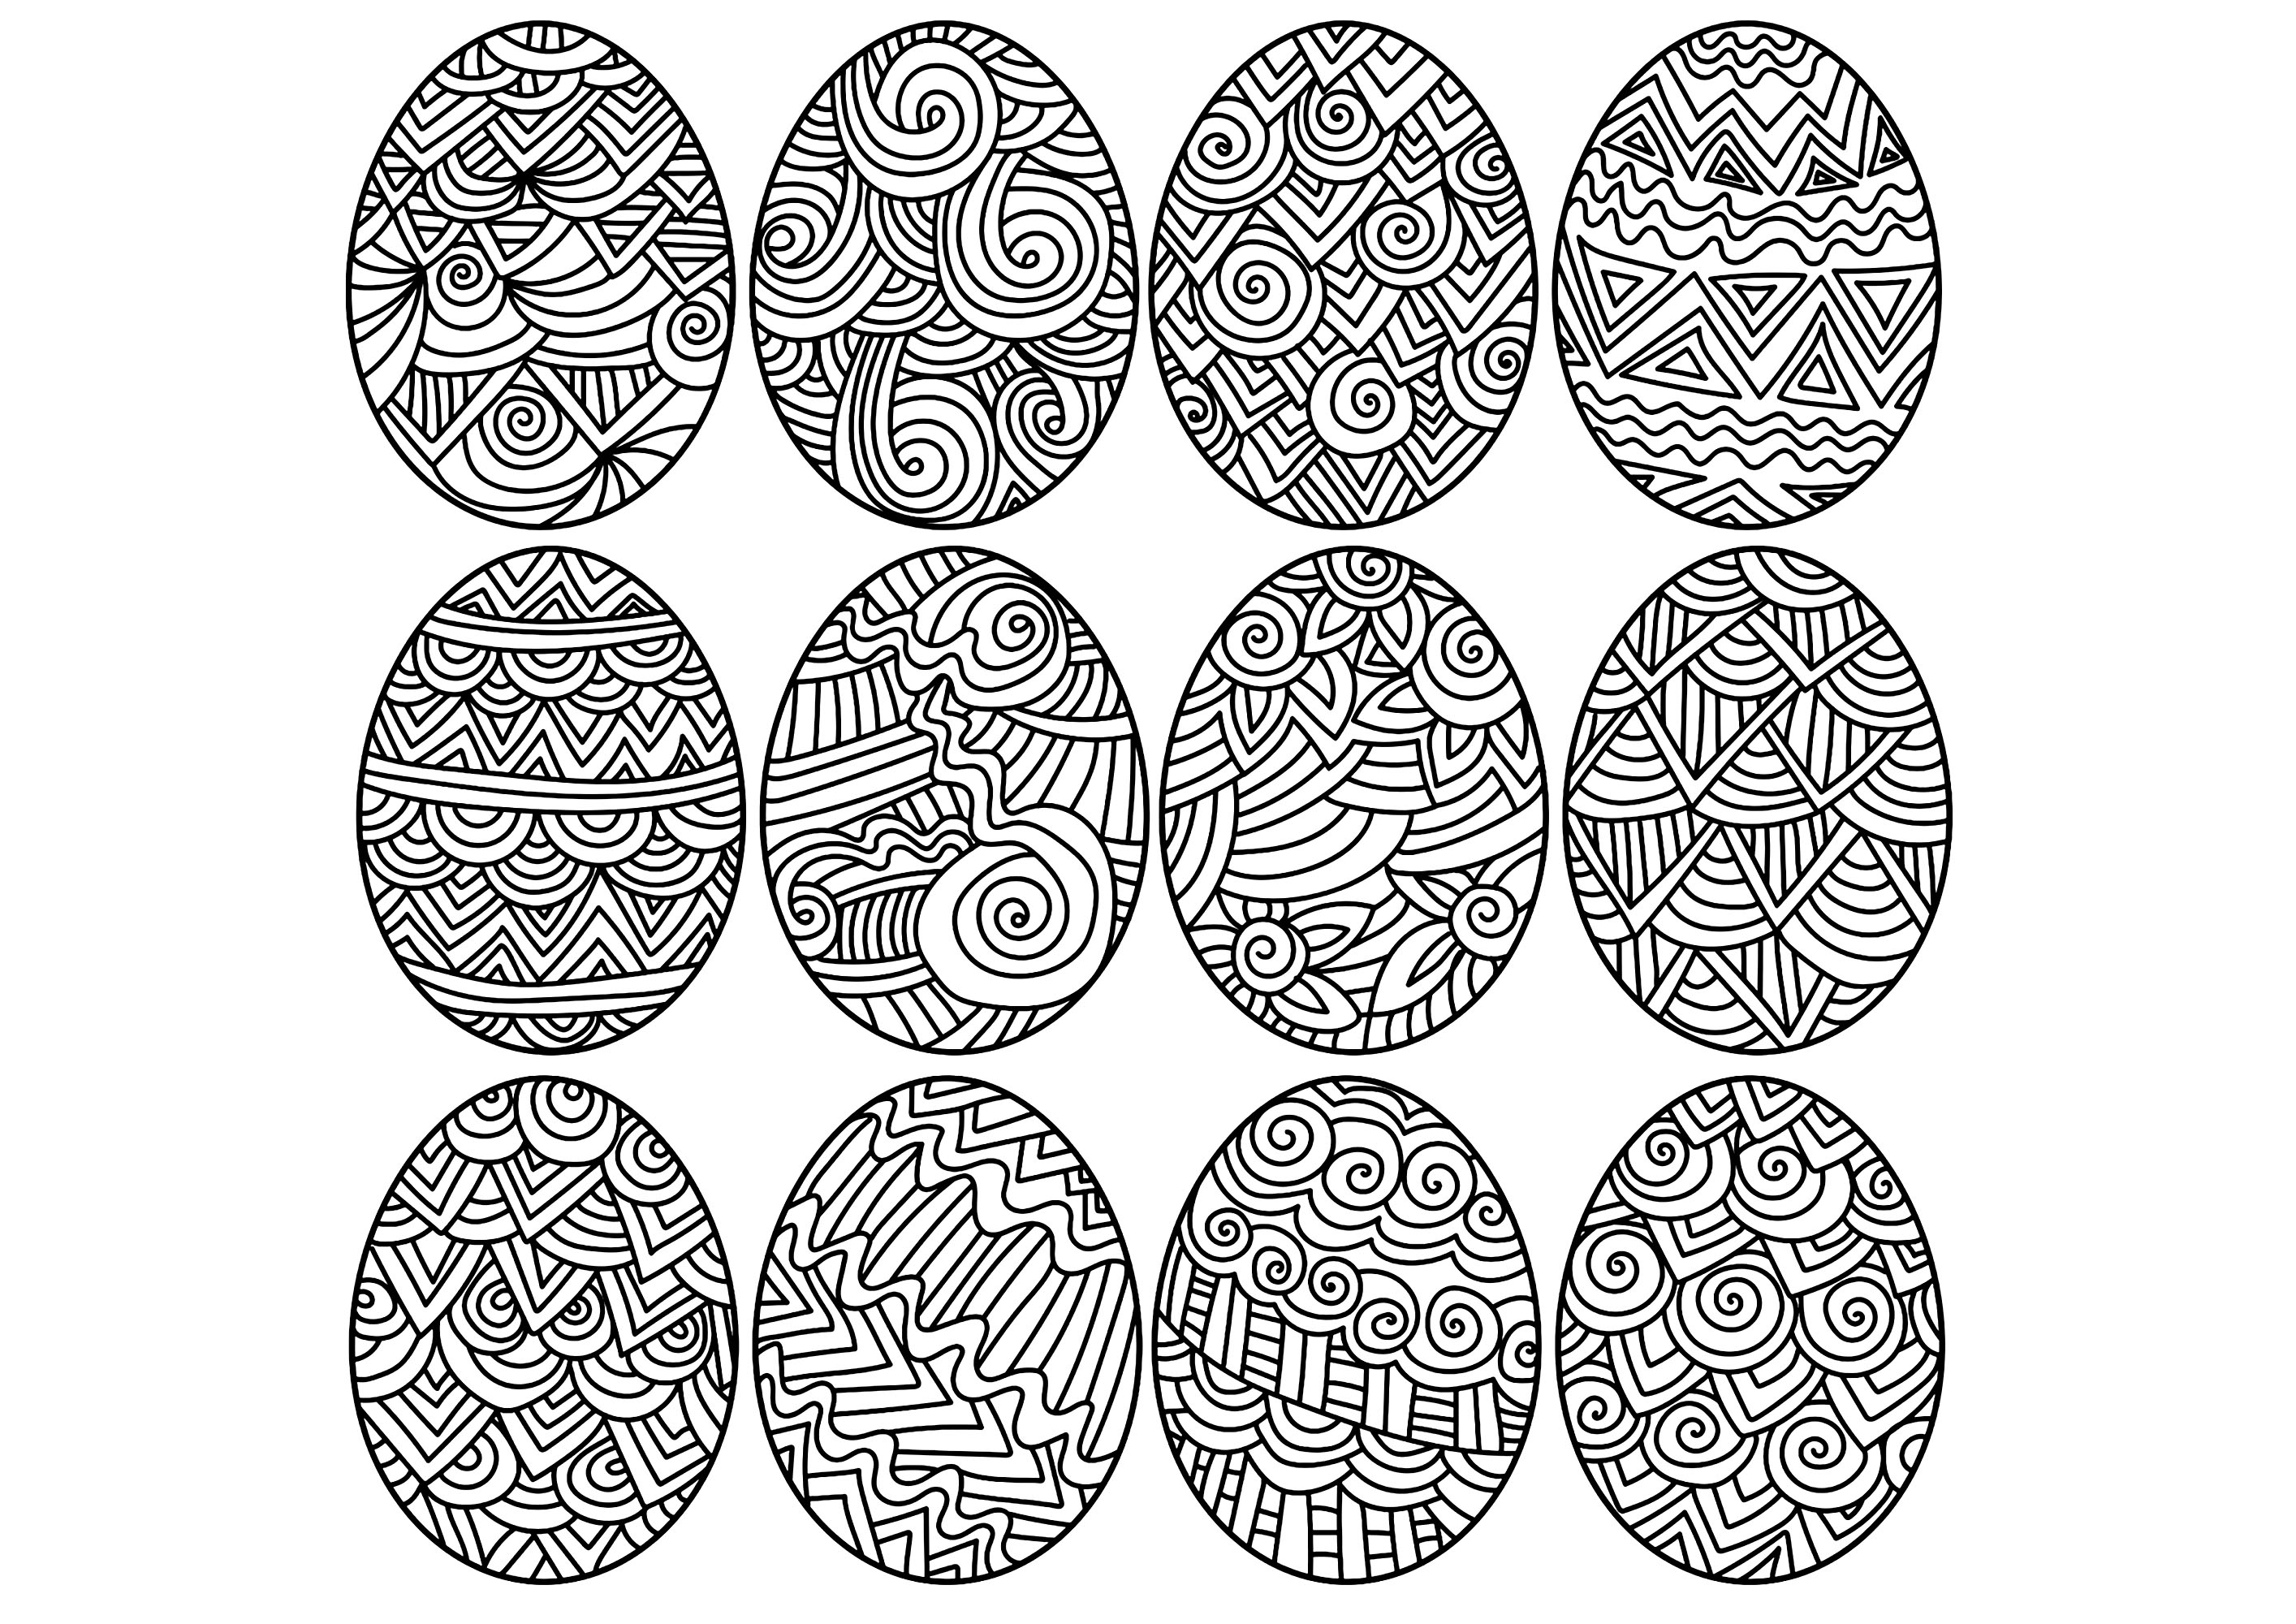 Doze ovos de Páscoa para colorir. Pinta estes ovos, são todos diferentes, Fonte : 123rf   Artista : sunnycoloring